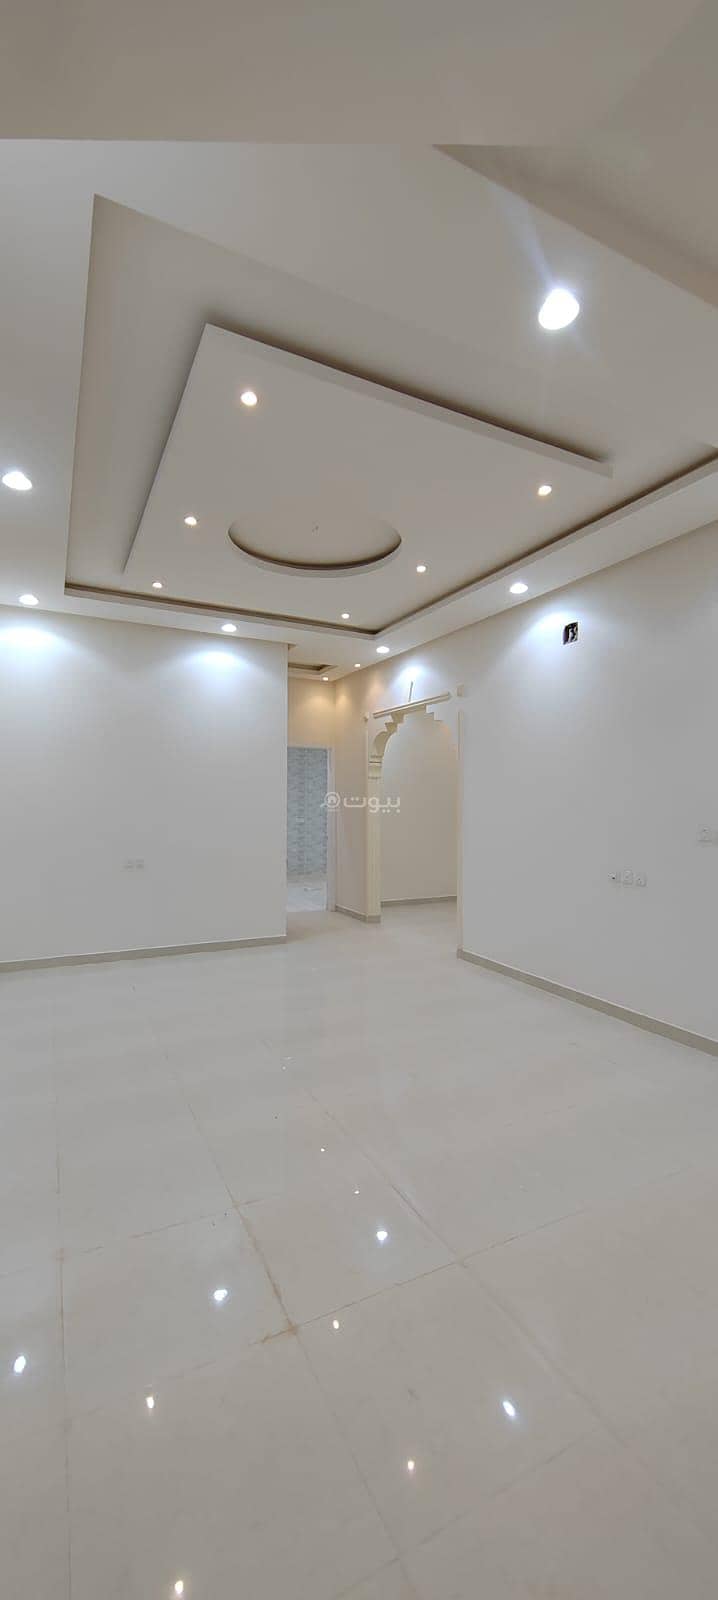 For Sale New Internal Staircase Villa In Al Hazm, West Riyadh